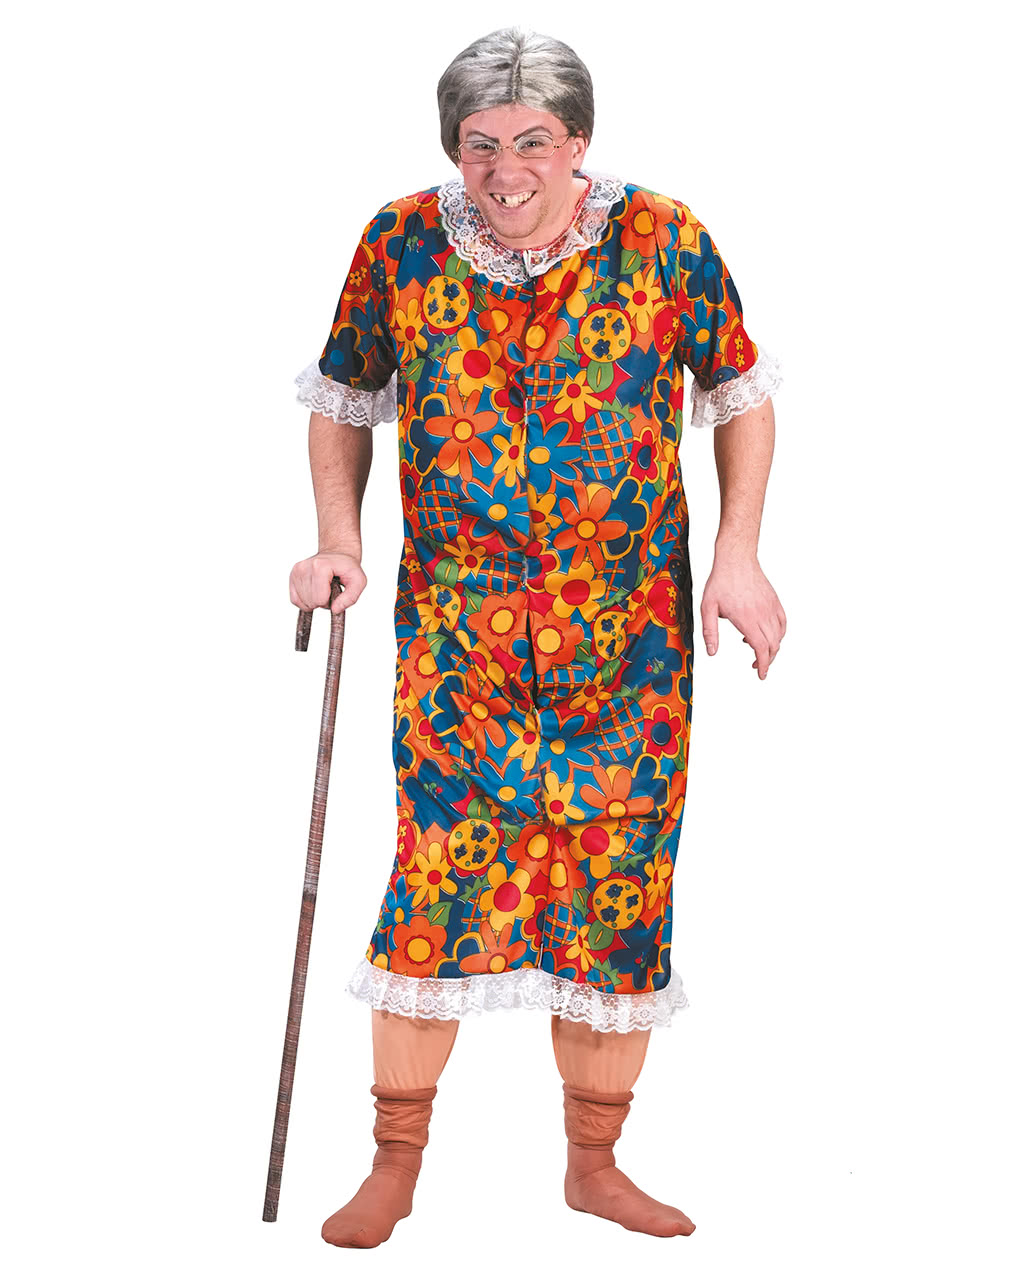 Полненькие бабушки. Костюм бабушки. Бабушка в платье. Халат бабки. Старушка в платье.